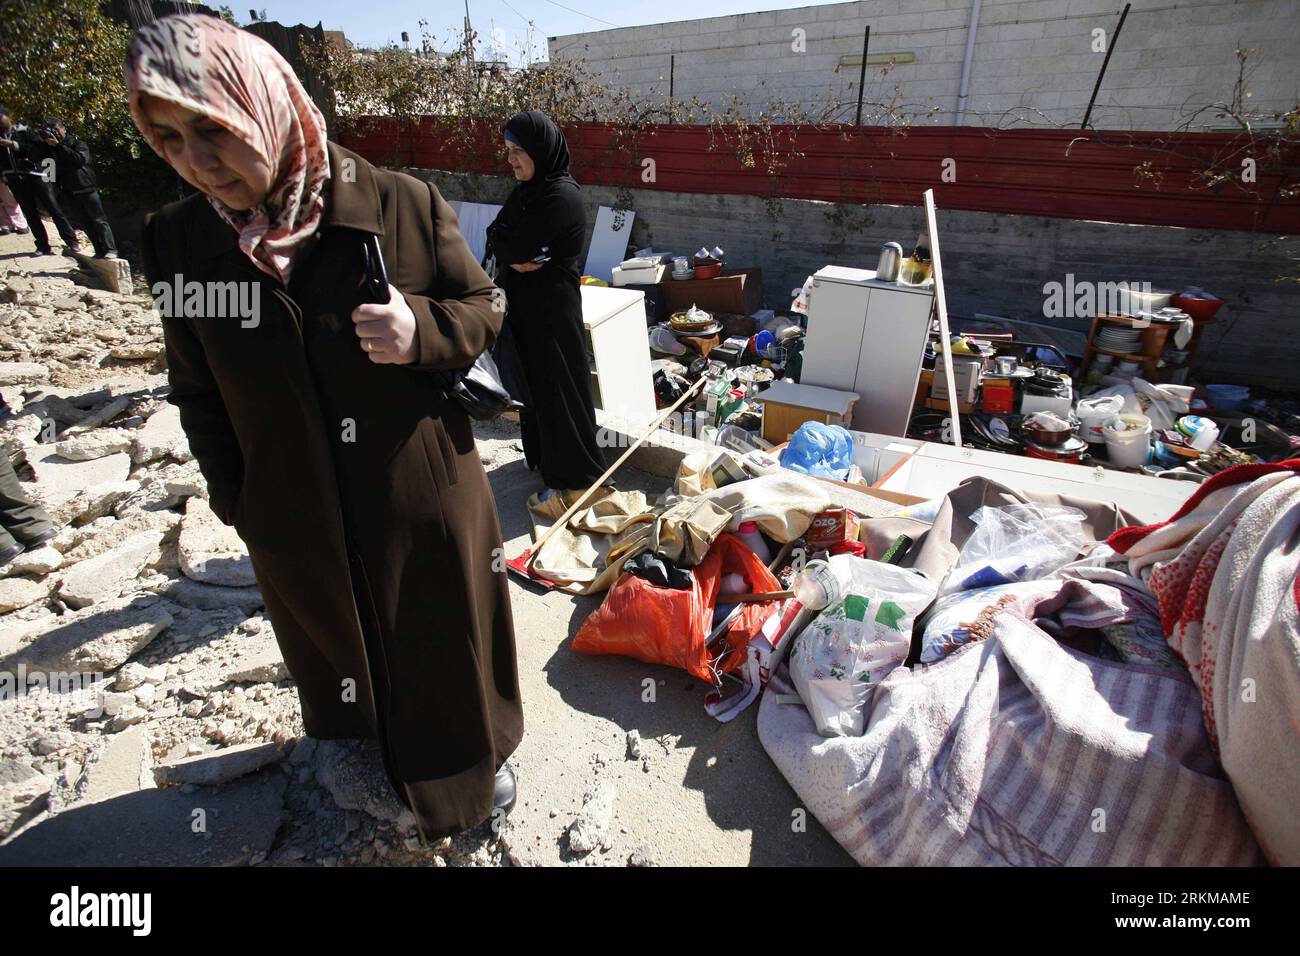 Bildnummer: 56635375 Datum: 05.12.2011 Copyright: imago/Xinhua (111205) -- JERUSALEM, 5. Dezember 2011 (Xinhua) -- Eine Palästinenserin steht auf dem Schutt eines Hauses, nachdem es von Israelis nach einem israelischen Regierungsbefehl in Ost-Jerusalems Stadtteil Beit Hanina am 5. Dezember 2011 zerstört wurde. (Xinhua/Muammar Awad) MIDEAST-JERUSALEM-ABRISS PUBLICATIONxNOTxINxCHN Gesellschaft Ostjerusalem Ost Palästinenser Abriss Wohnhaus xbs x0x 2011 quer Premiere 56635375 Datum 05 12 2011 Copyright Imago XINHUA Jerusalem DEC 5 2011 XINHUA eine PALÄSTINENSISCHE Frau steht AUF dem SCHUTT eines Hauses dahinter Stockfoto